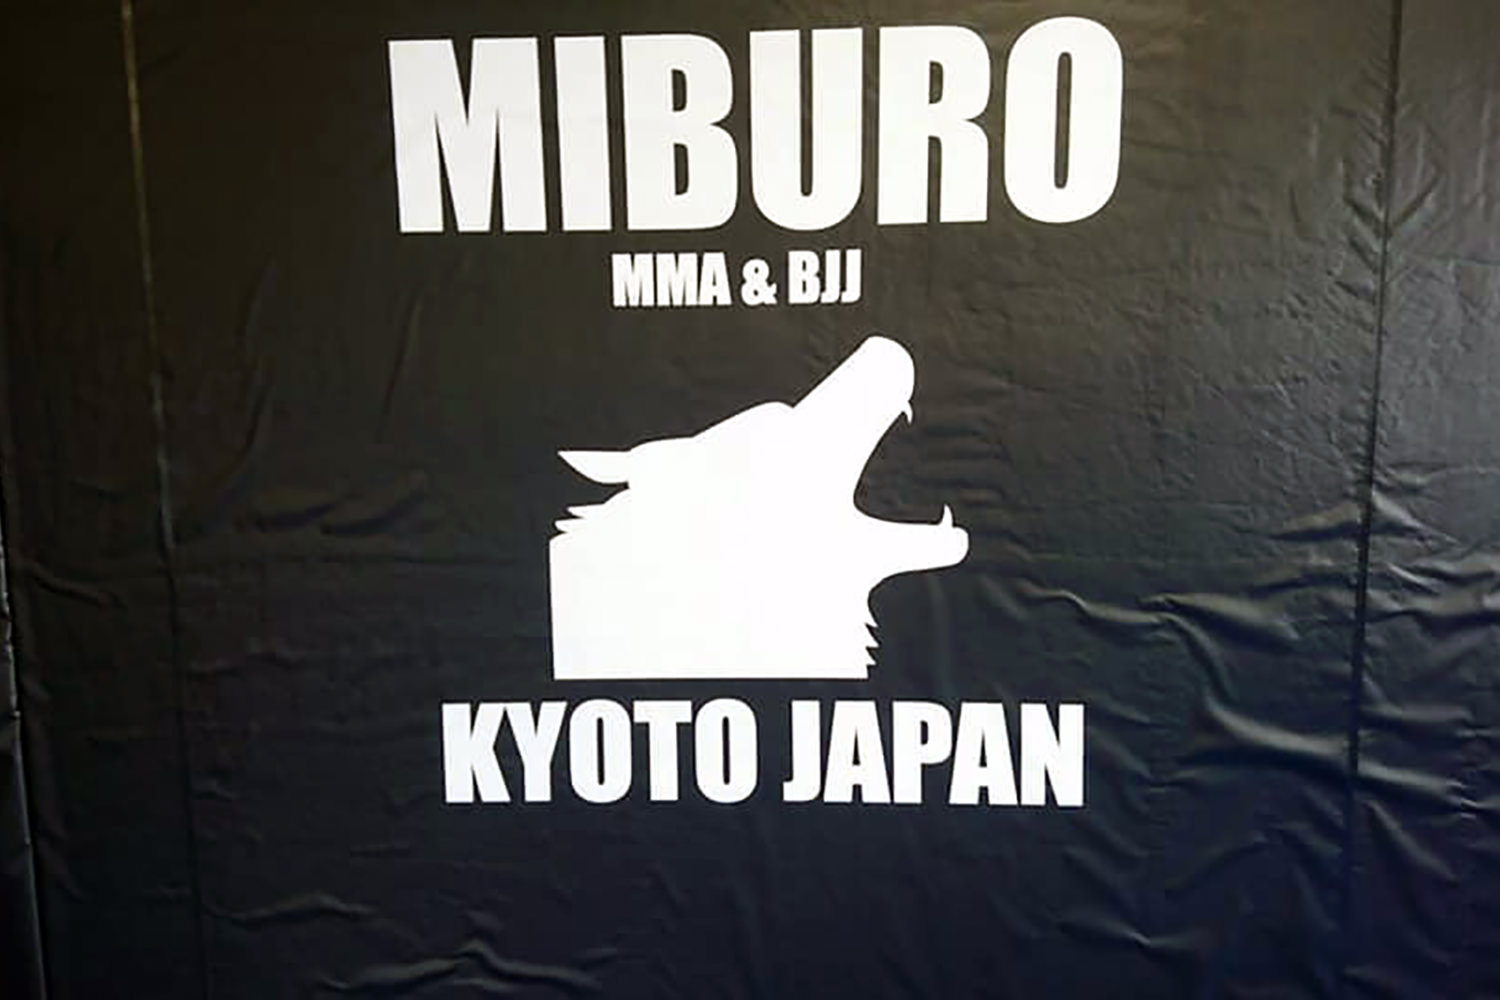 総合格闘技ジム「MIBURO」様 ロゴマークデザイン